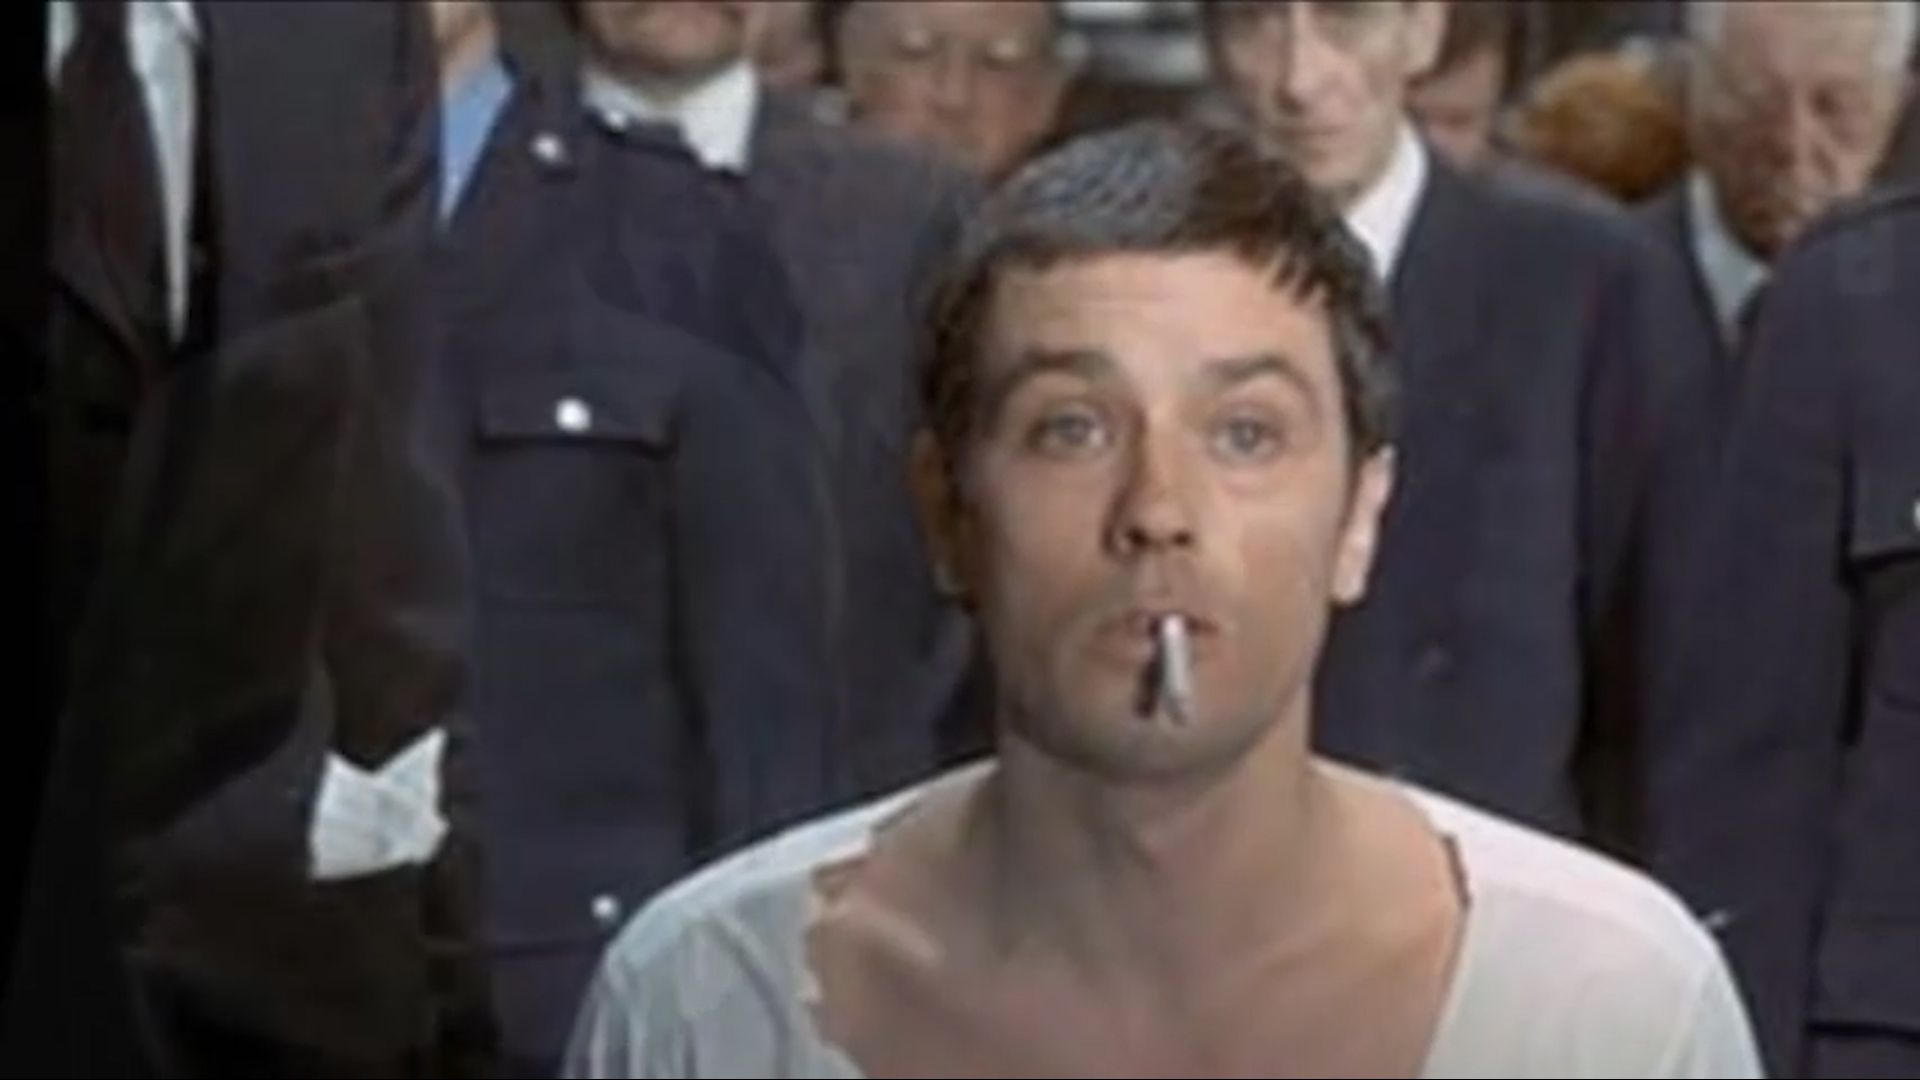 Alain Delon fuma su último cigarrillo antes de la ejecución, en el film Dos contra la ciudad (1973). El cuello de la camisa del reo era recortado para dejar la nuca descubierta